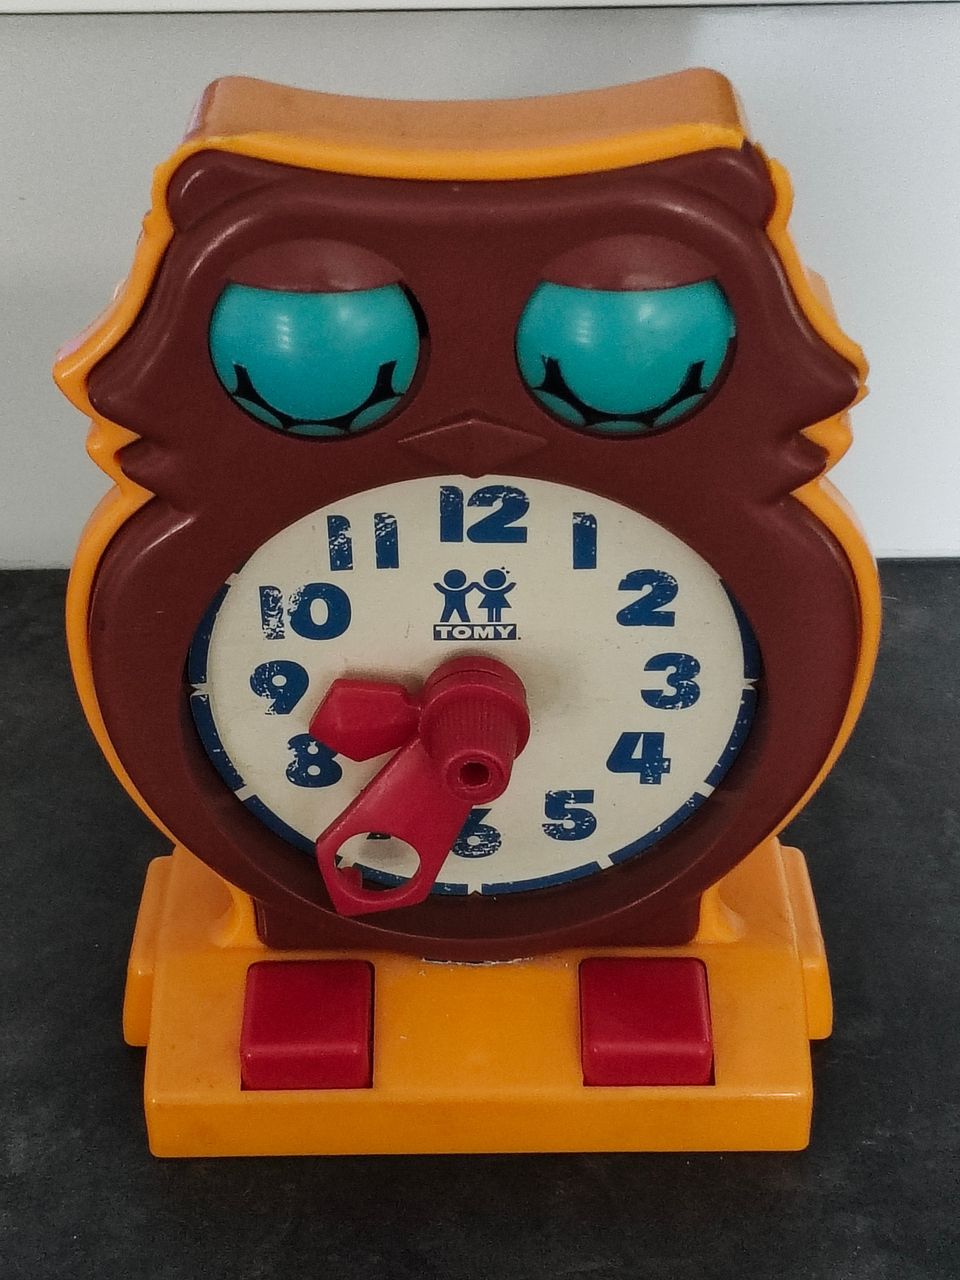 Tomy vintage pöllökello kellonajan harjoitteluun (Tomy 1975)